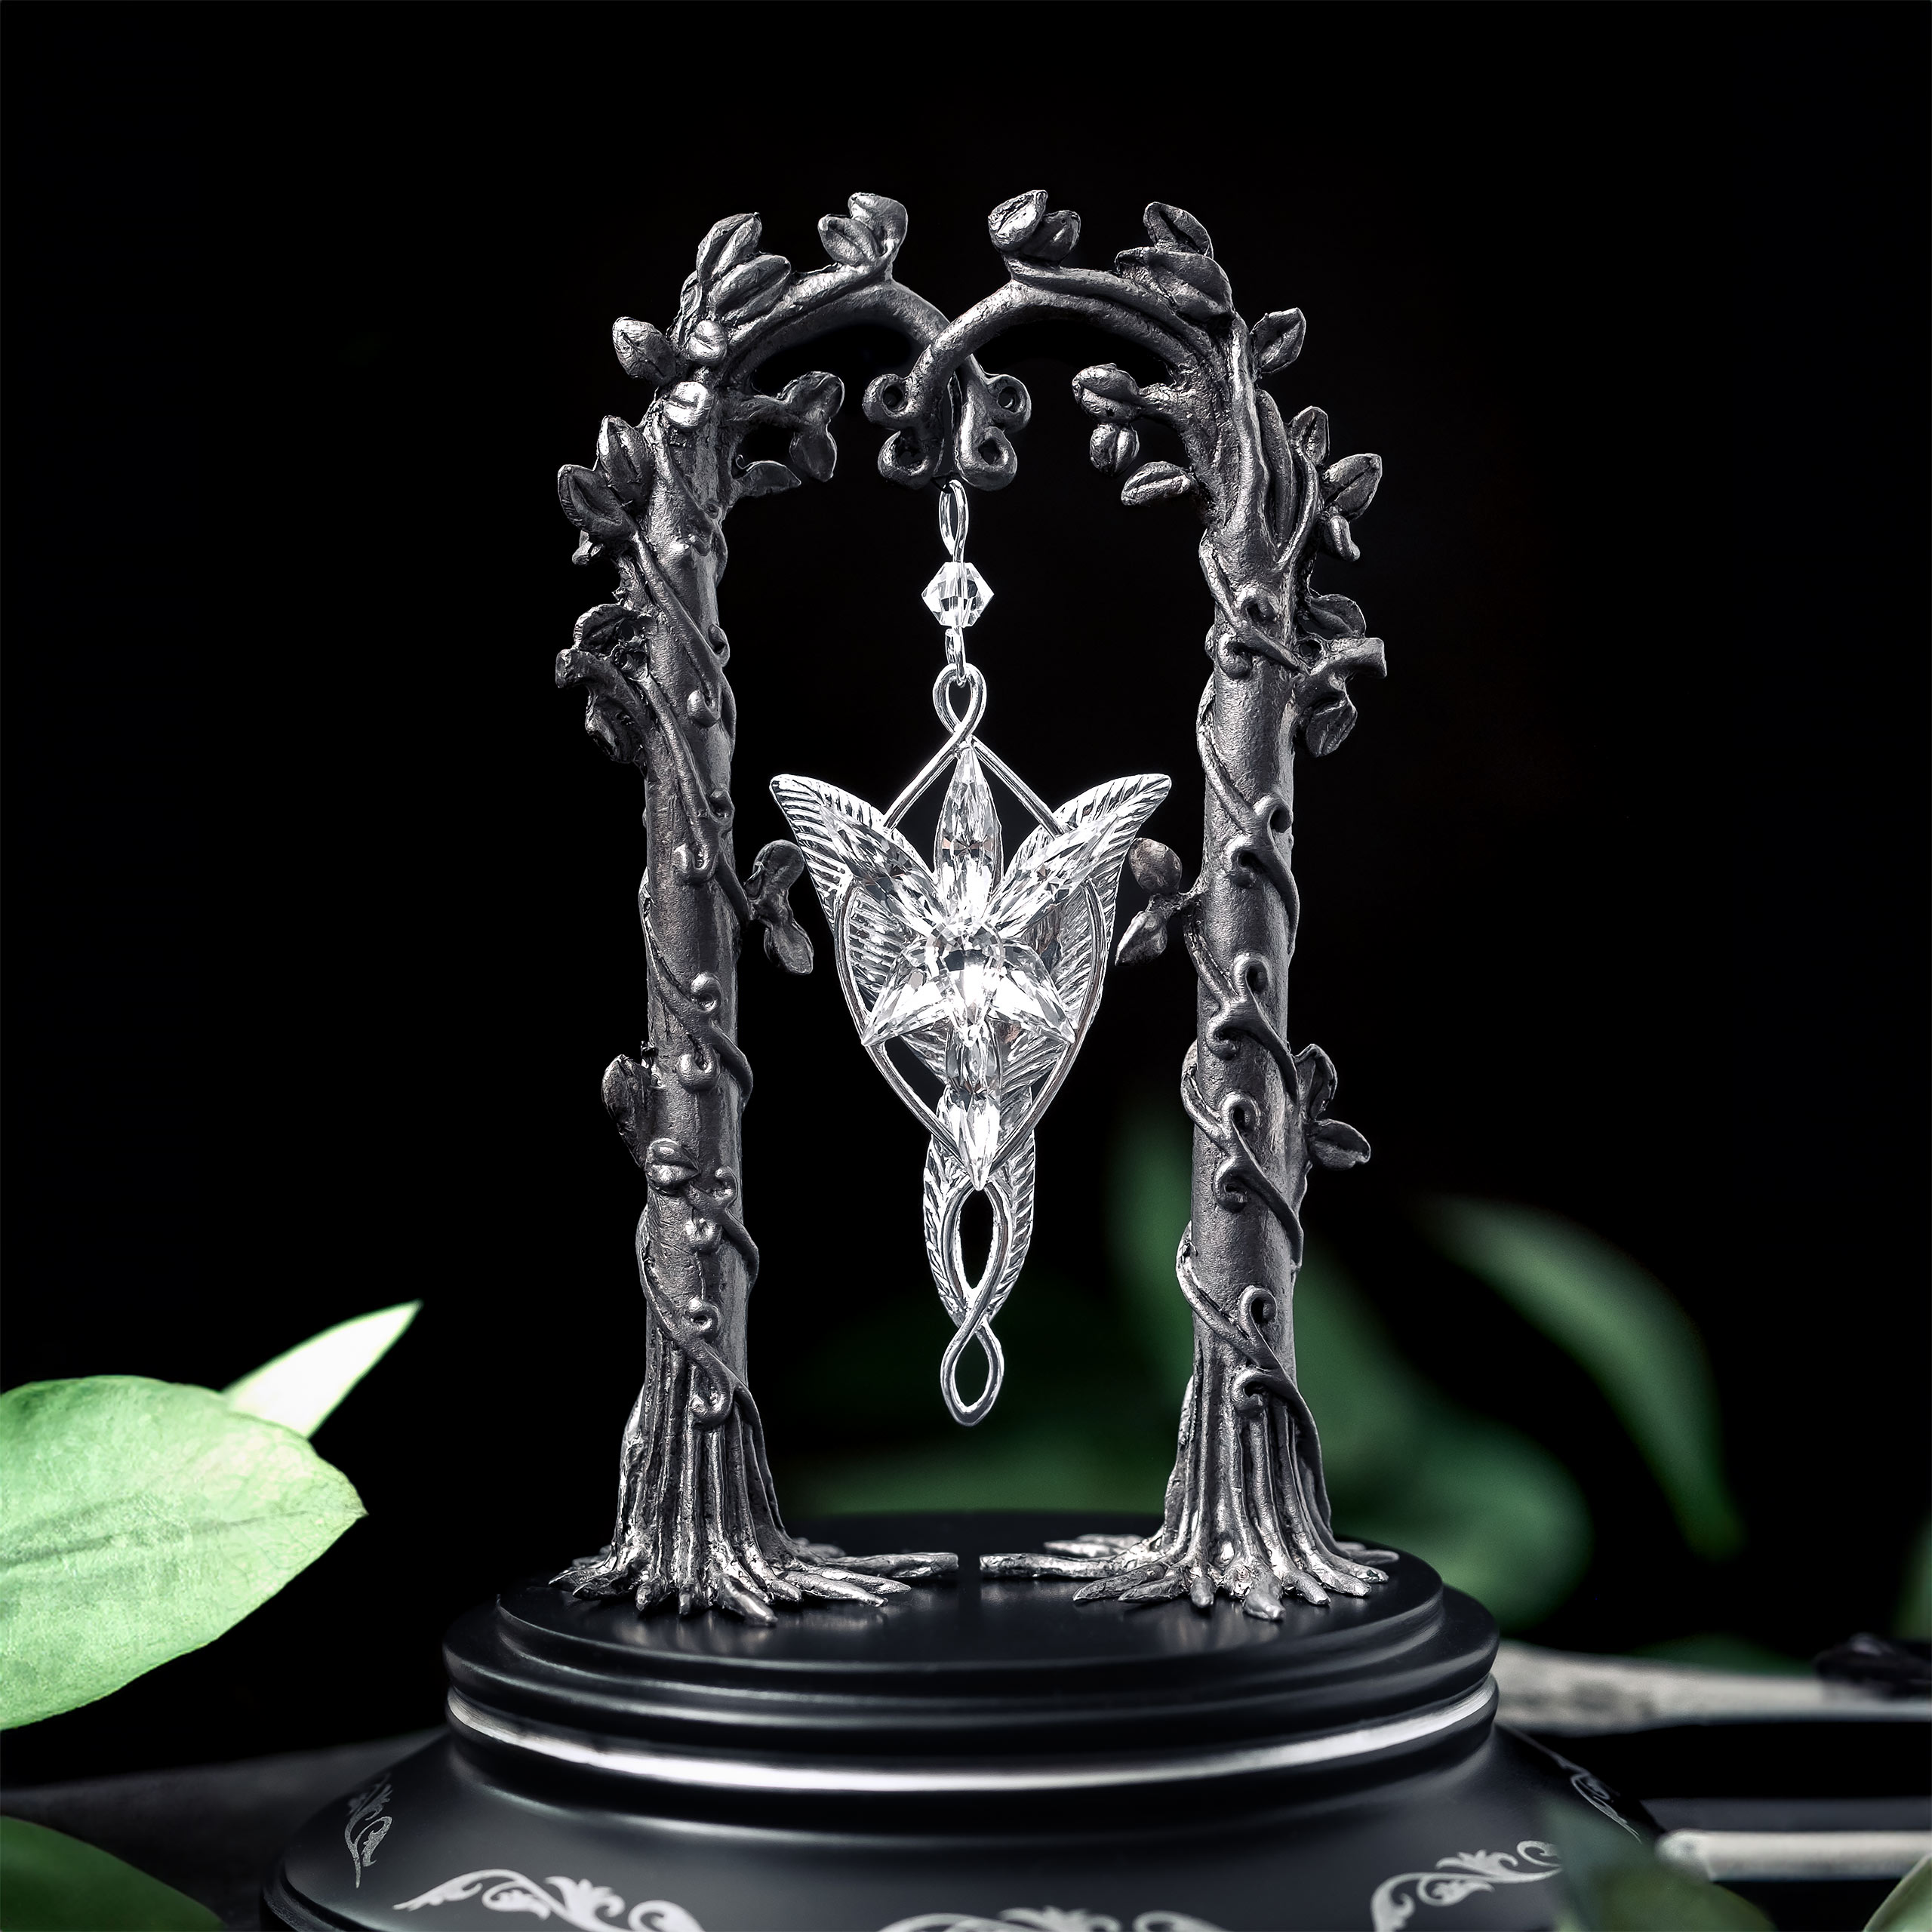 Evenstar Jewelry Showcase with Arwen's Evenstar